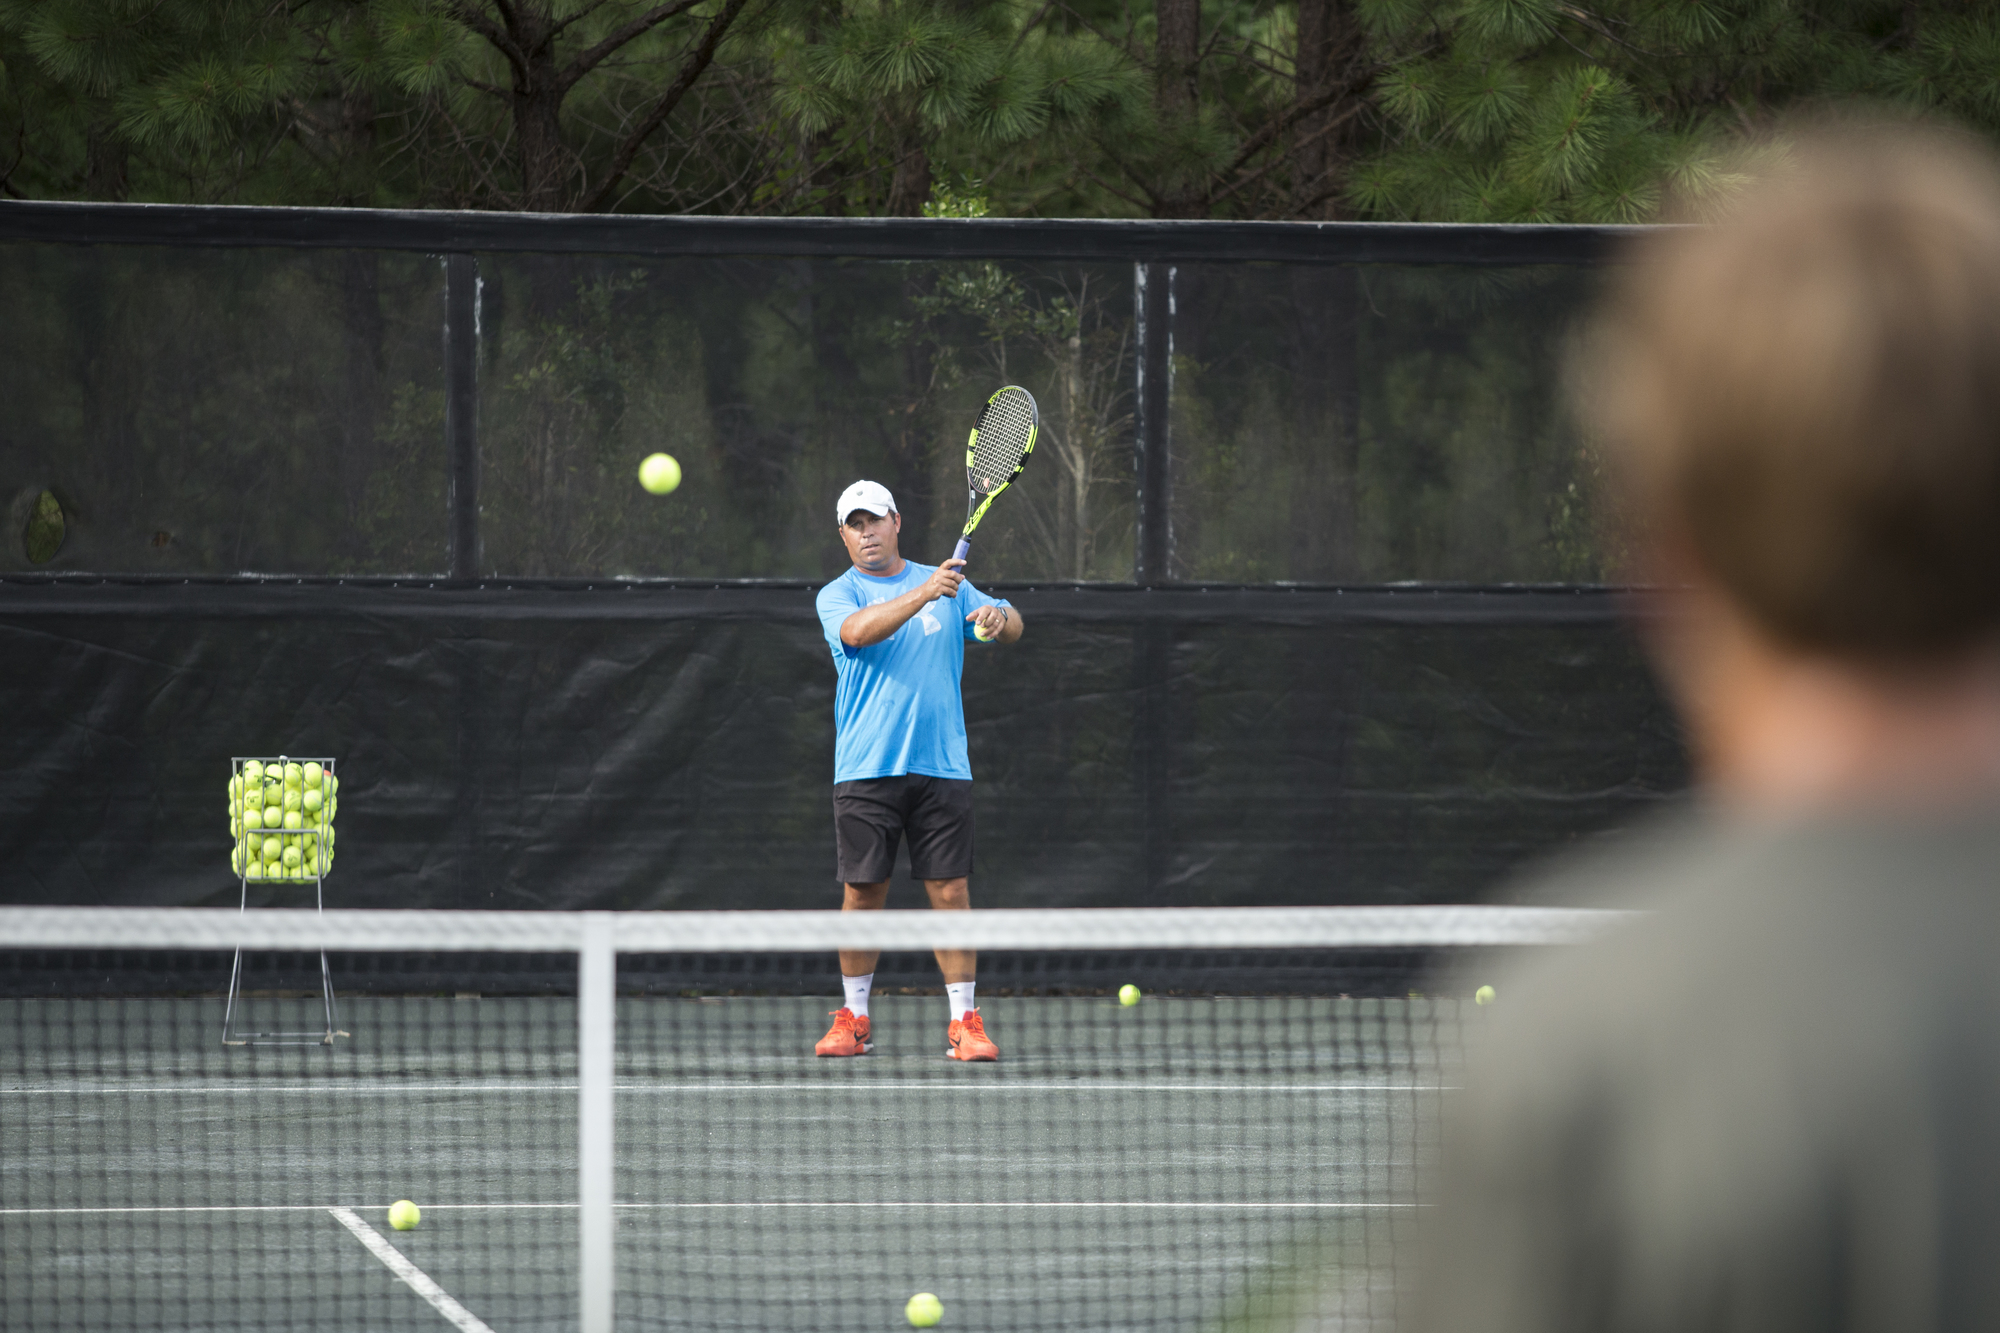 Francois B. teaches tennis lessons in Auburn, AL